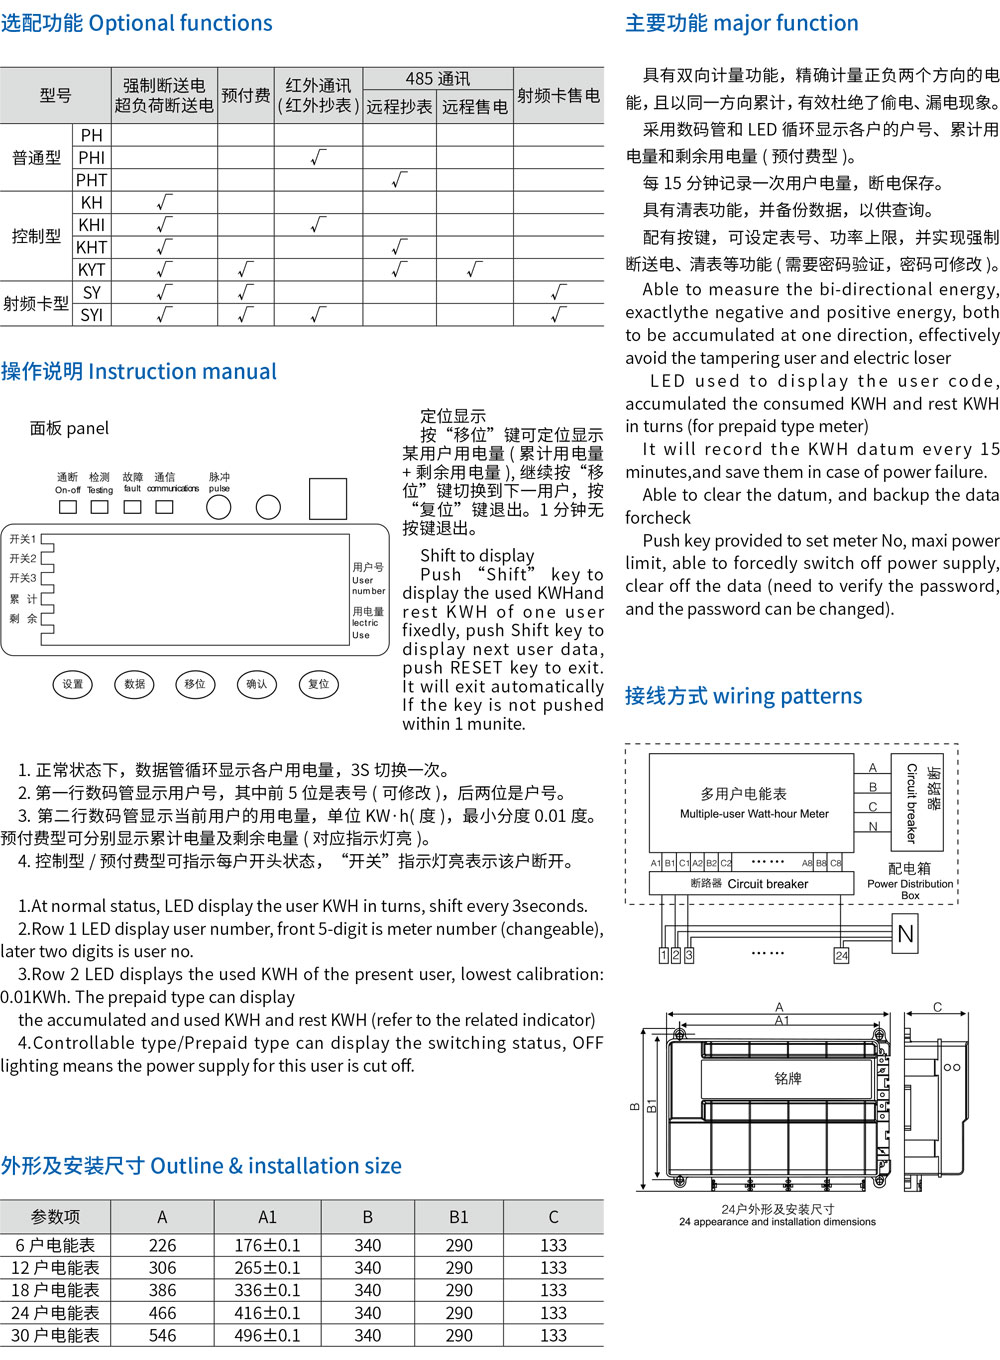 11-DDSH8588 系列多用户电能表-规格-2.jpg